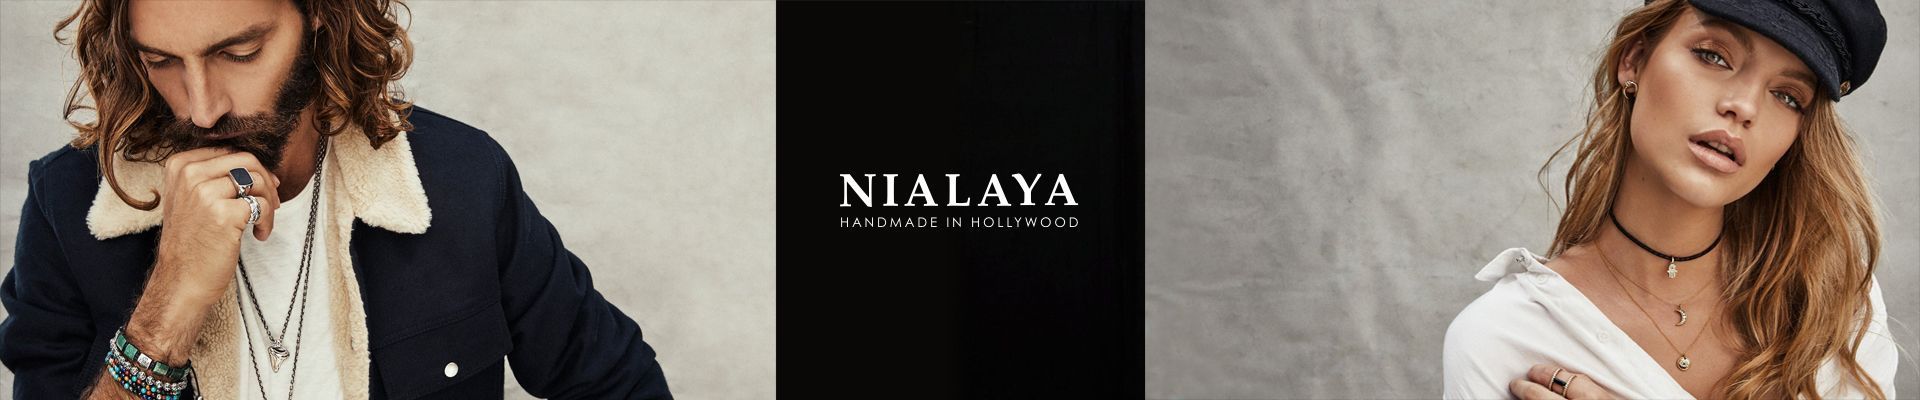 Nialaya